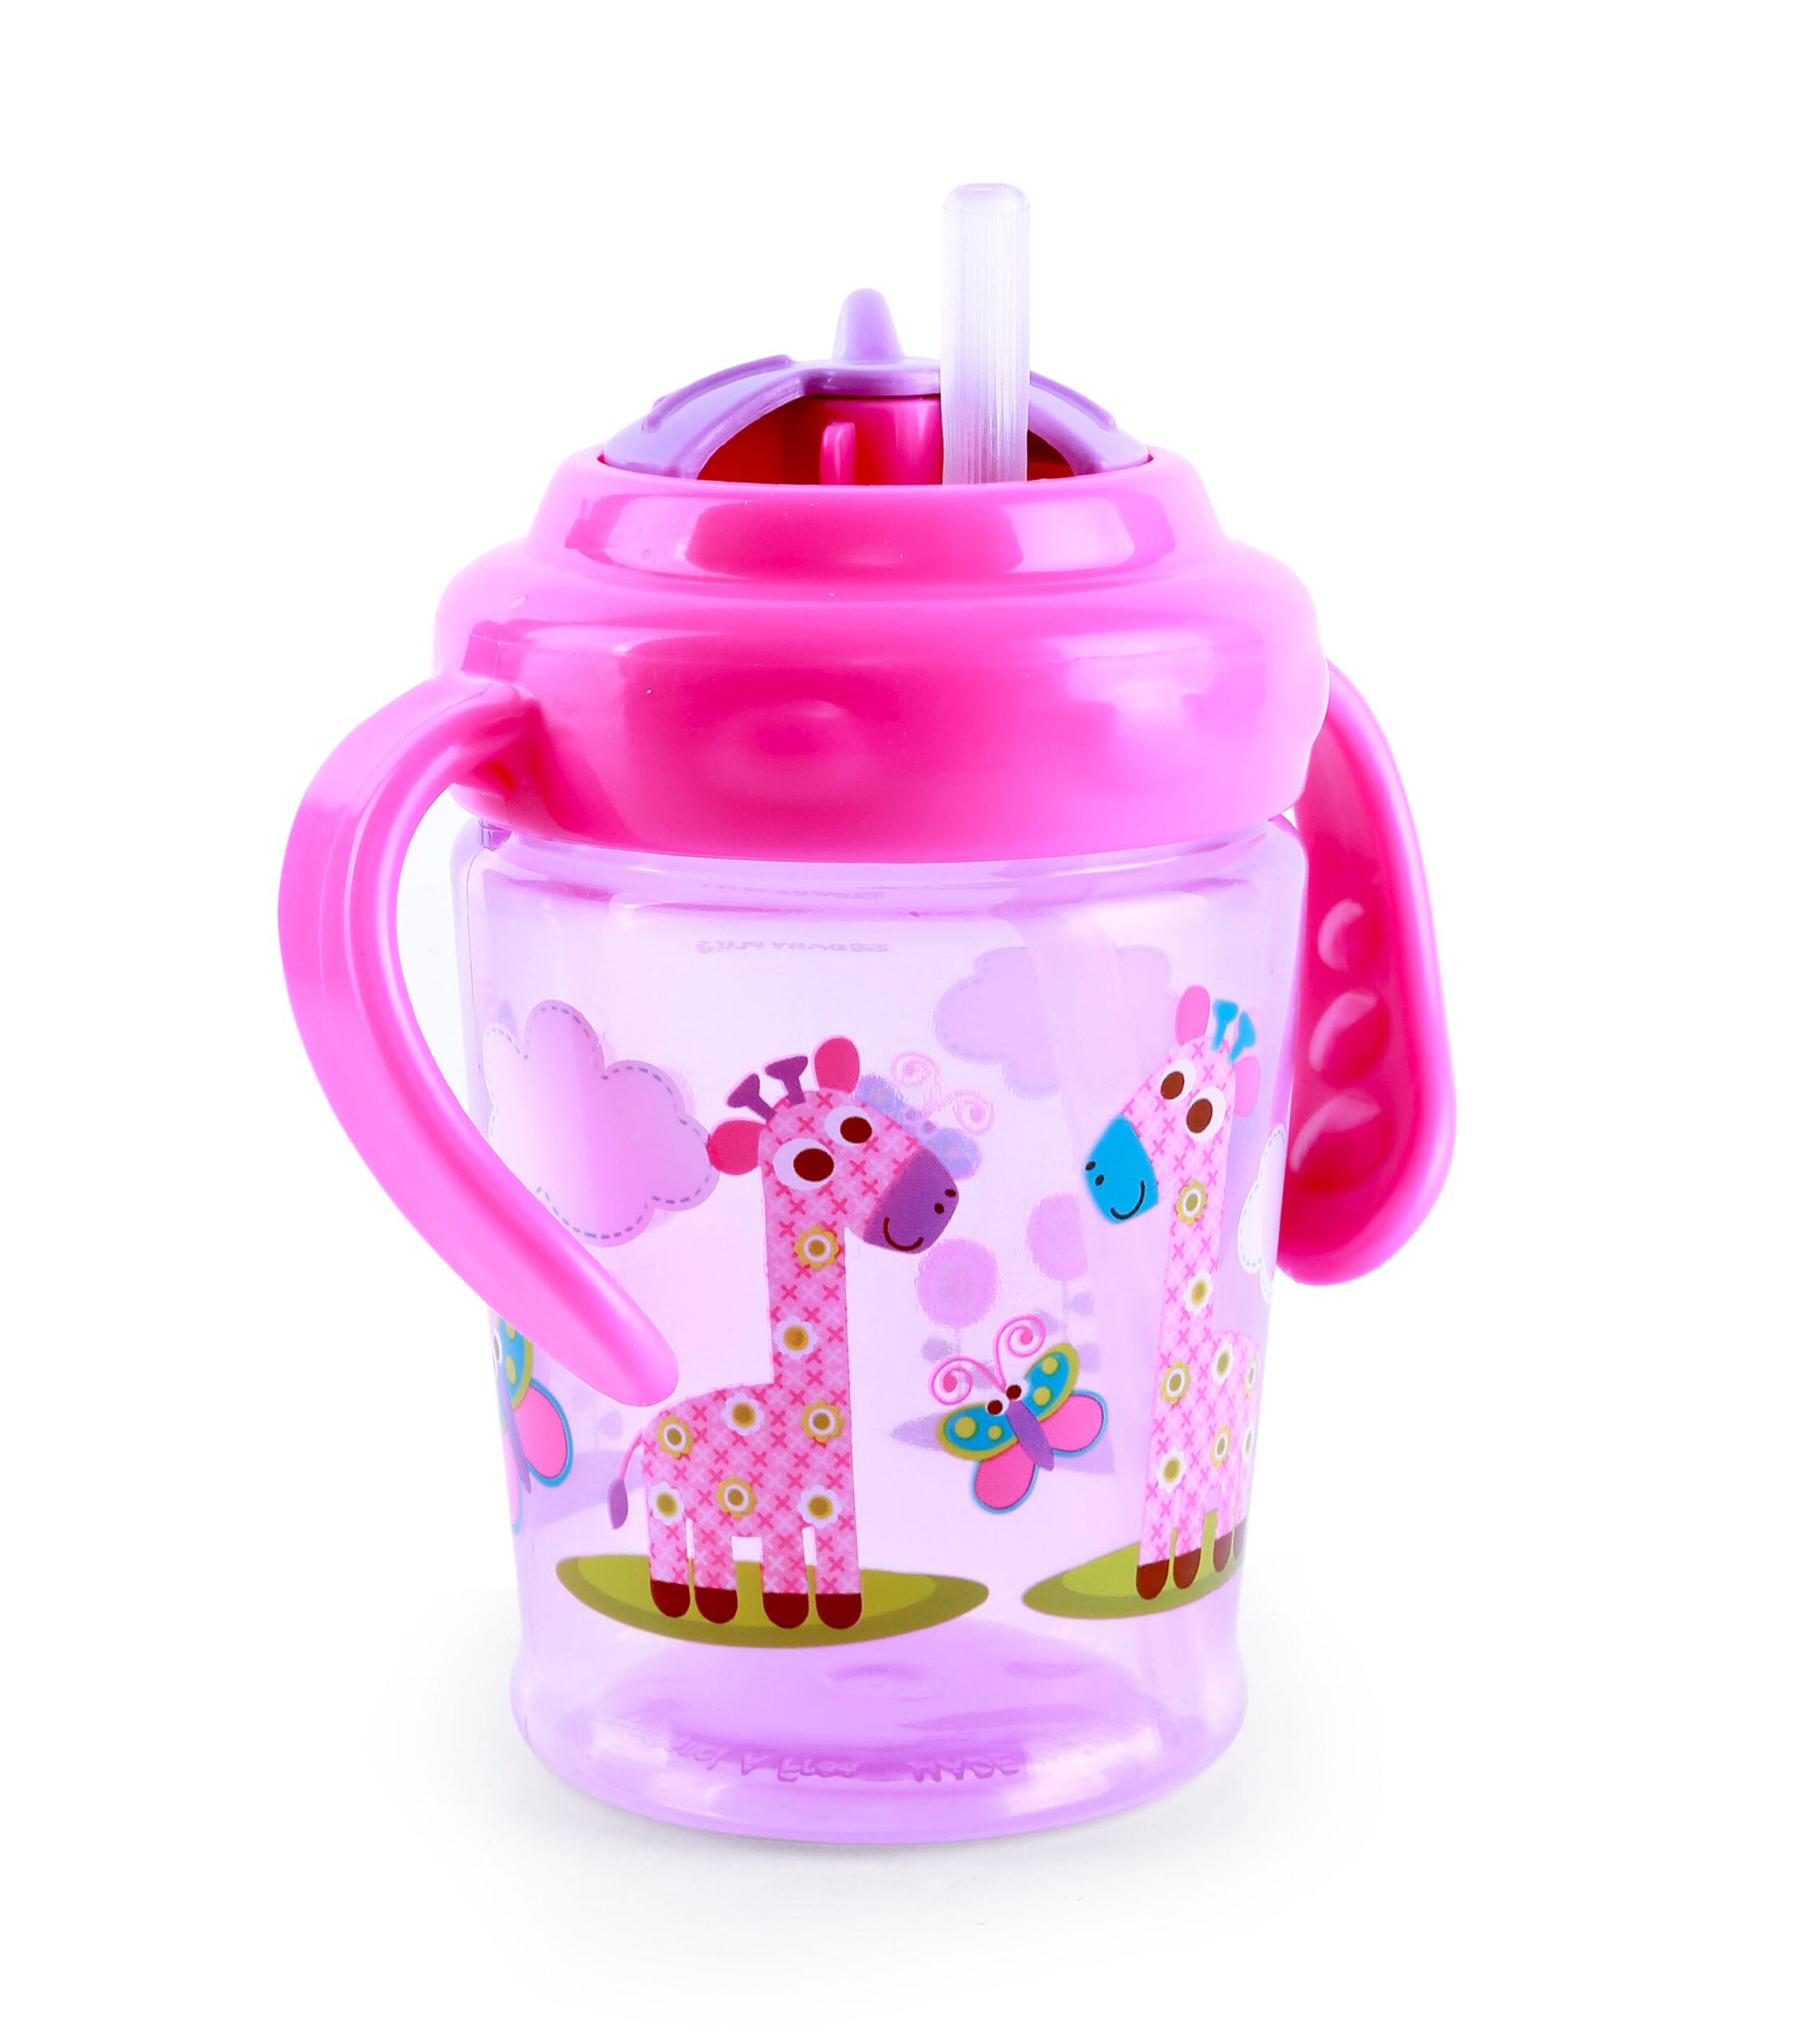 قنينة ماء للأطفال  Baby Plus Baby Cup With 2 Handles